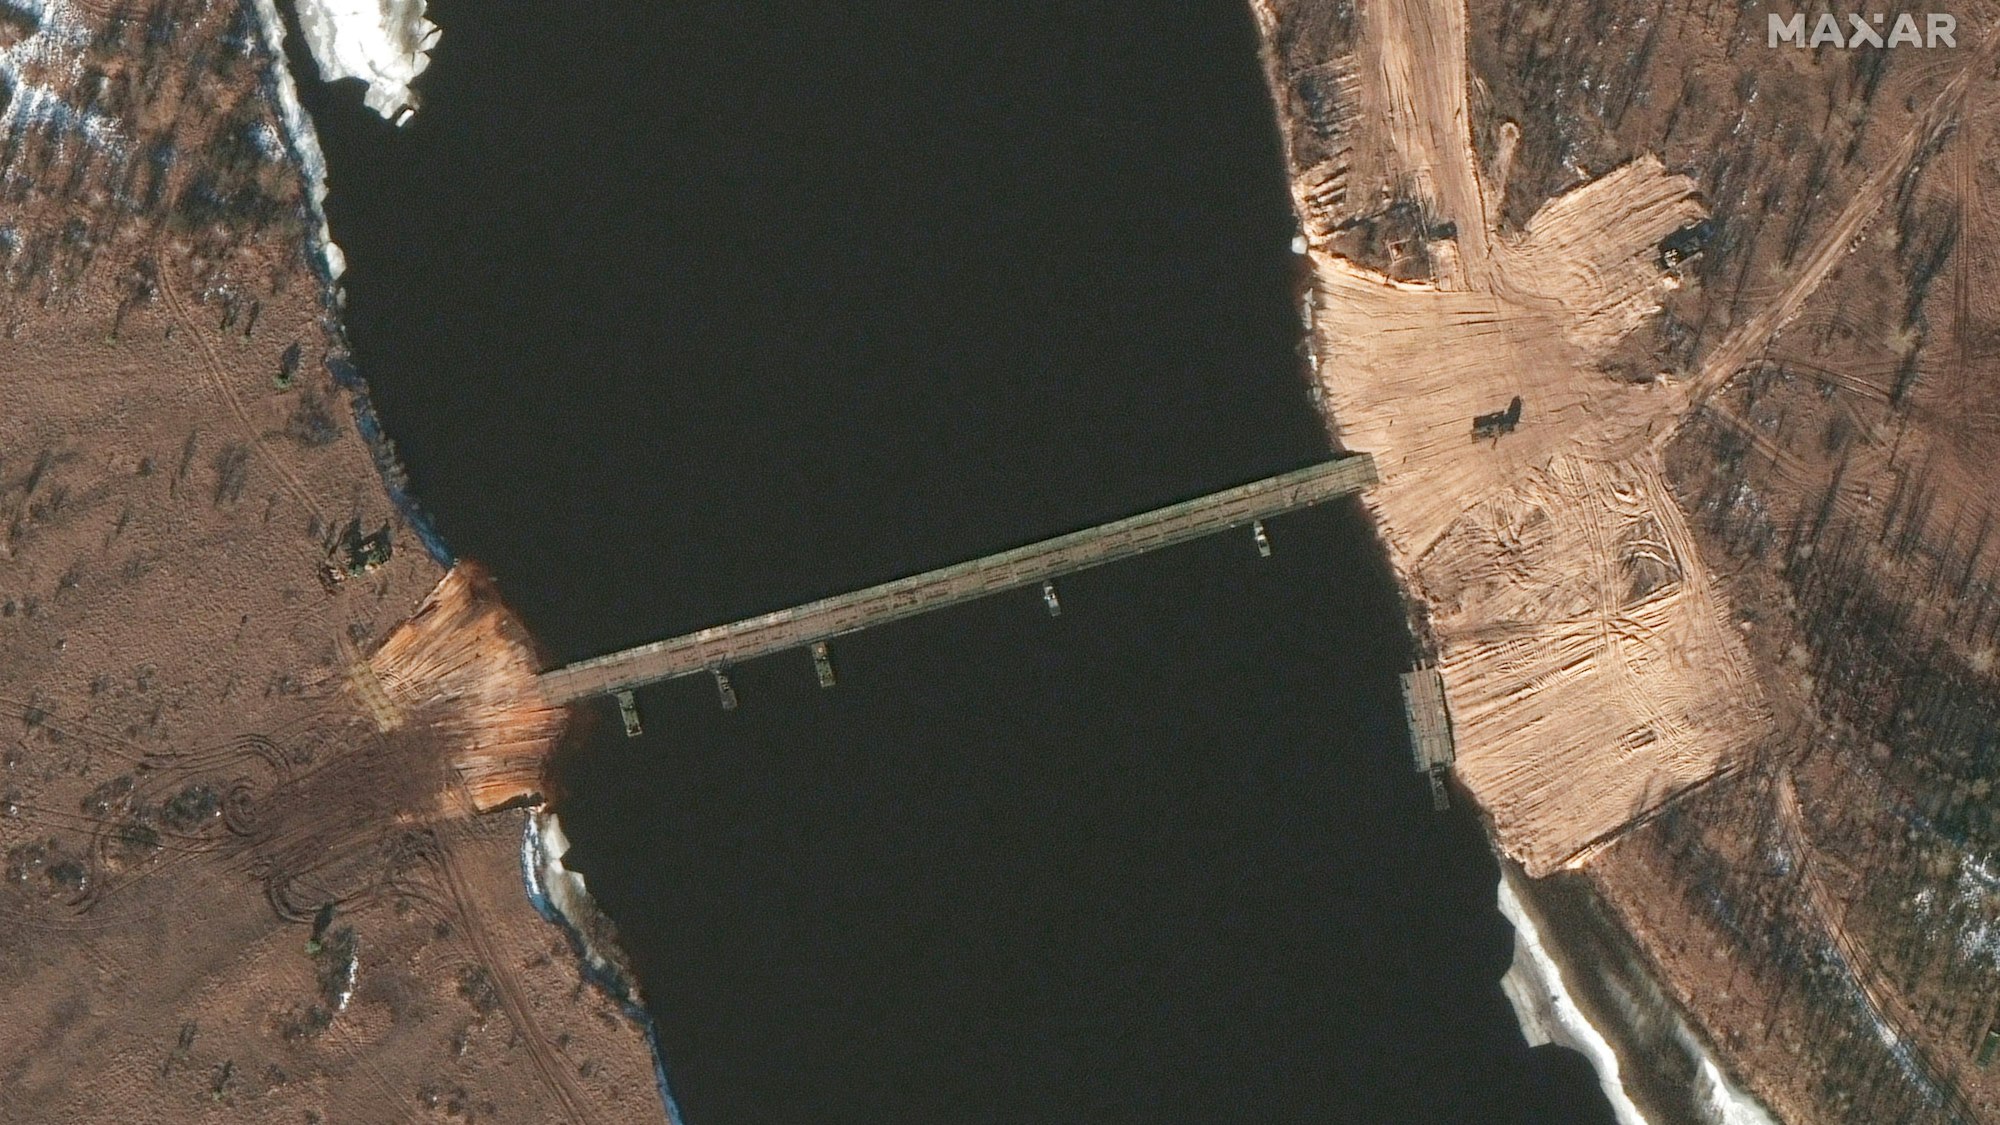 Dieses am 15. Februar von Maxar Technologies bereitgestellte Satellitenbild zeigt eine über Nacht entstandene Pontonbrücke, die über den Fluss Prypjat an der Grenze zu Weißrussland führt.